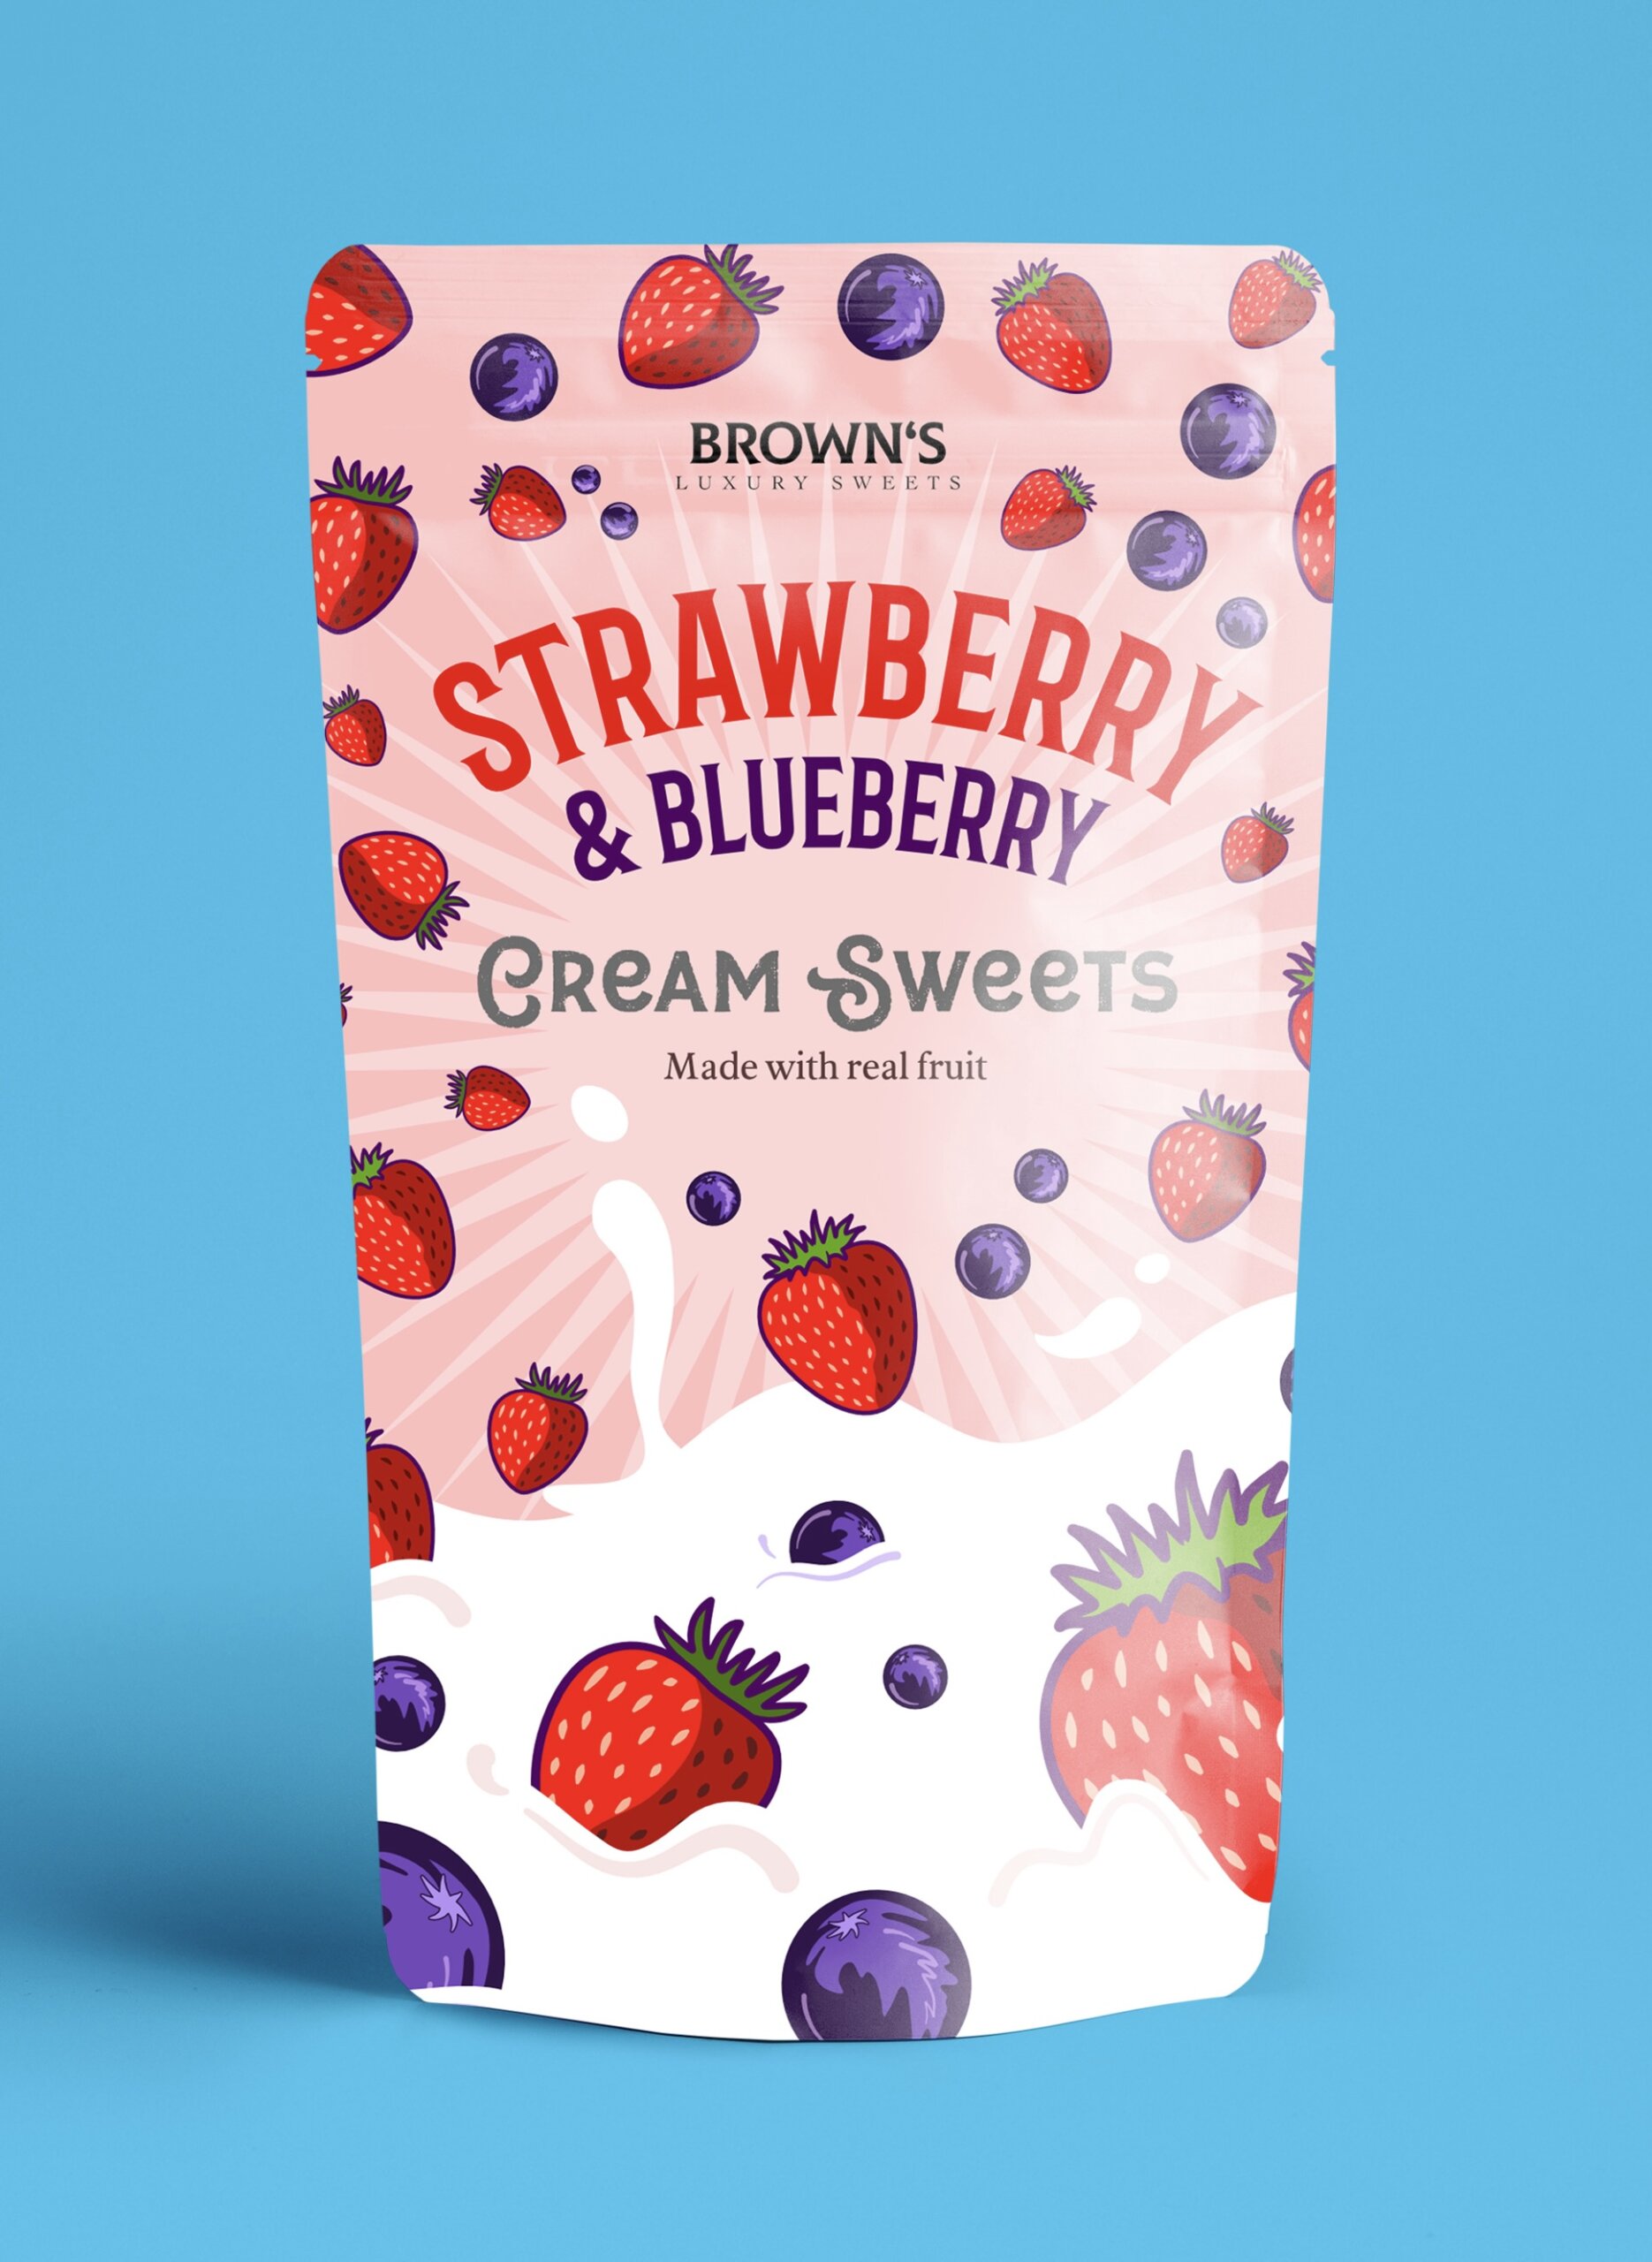 Sweet packaging by Ollie Brown